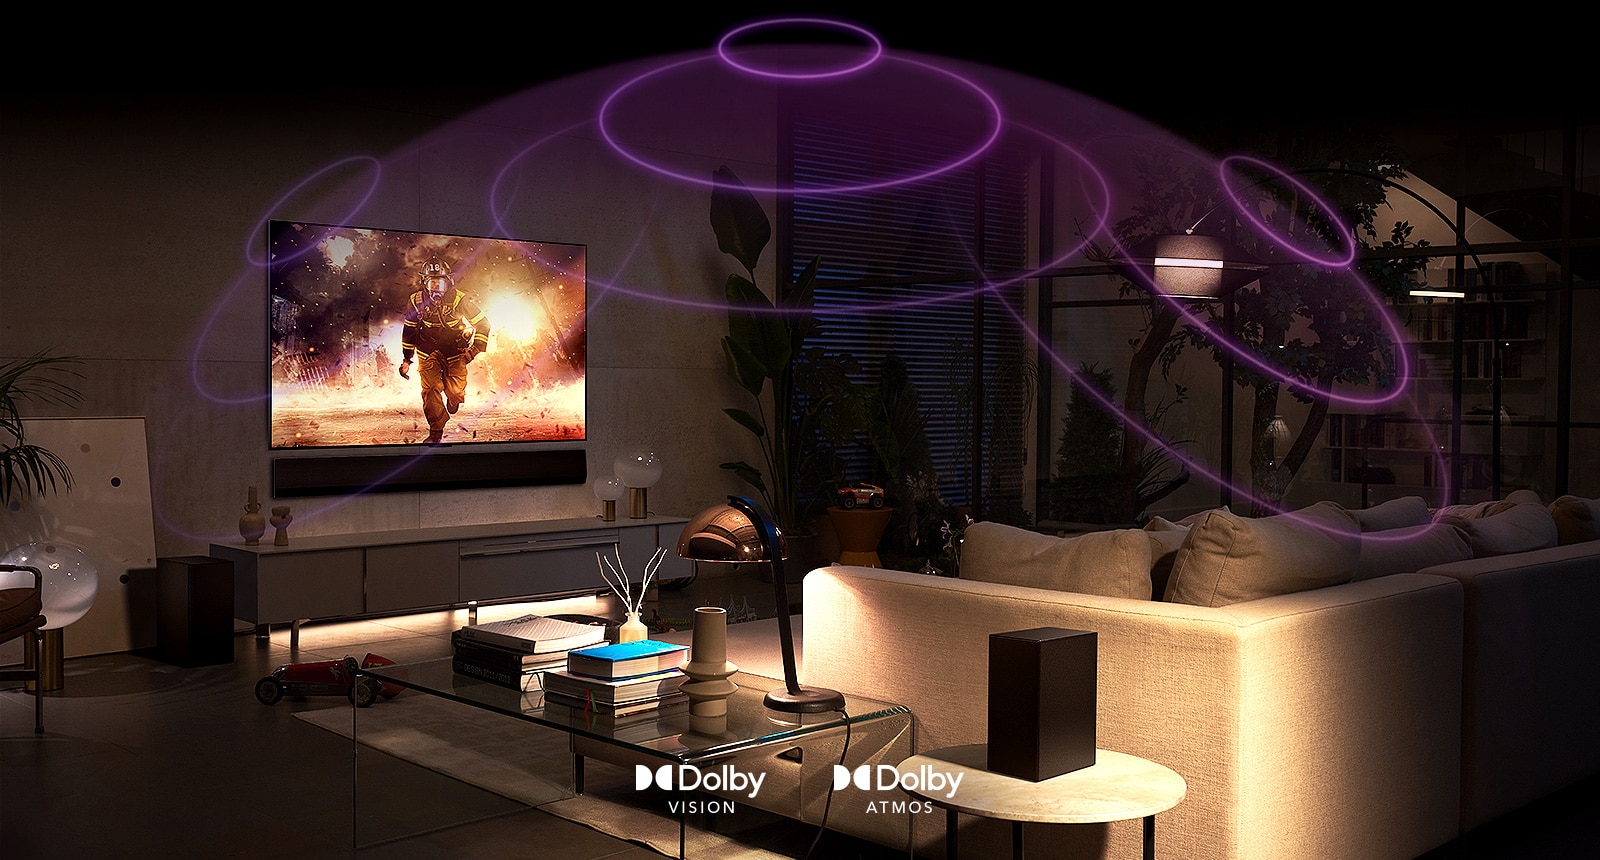 Obrázek místnosti s televizorem LG OLED, který přehrává akční film. Zvukové vlny vytváří kupoli mezi pohovkou a televizorem, což znázorňuje pohlcující prostorový zvuk.